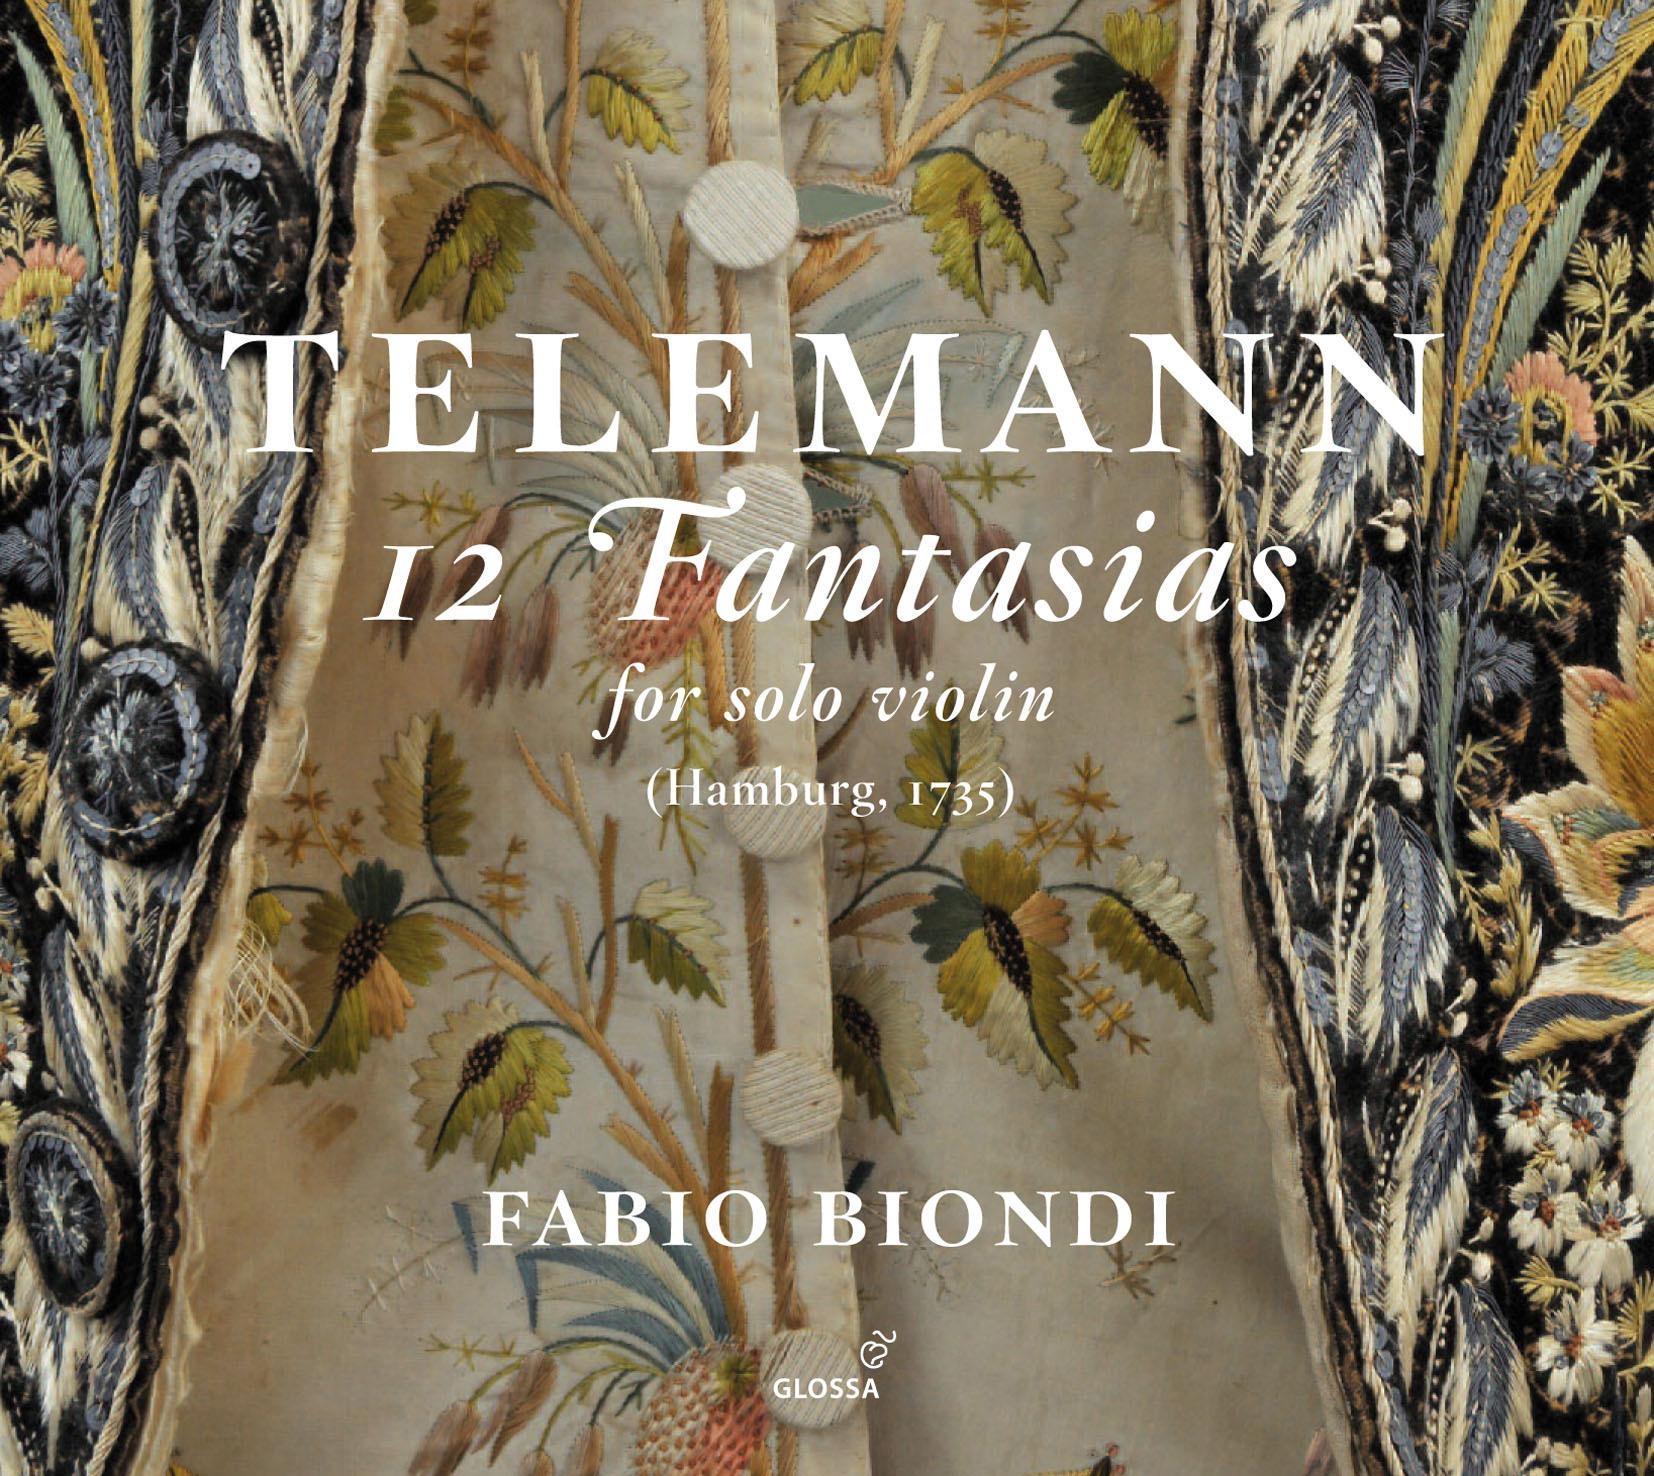 Fantasia for Solo Violin No. 9 in B Minor, TWV 40:22: I. Siciliana